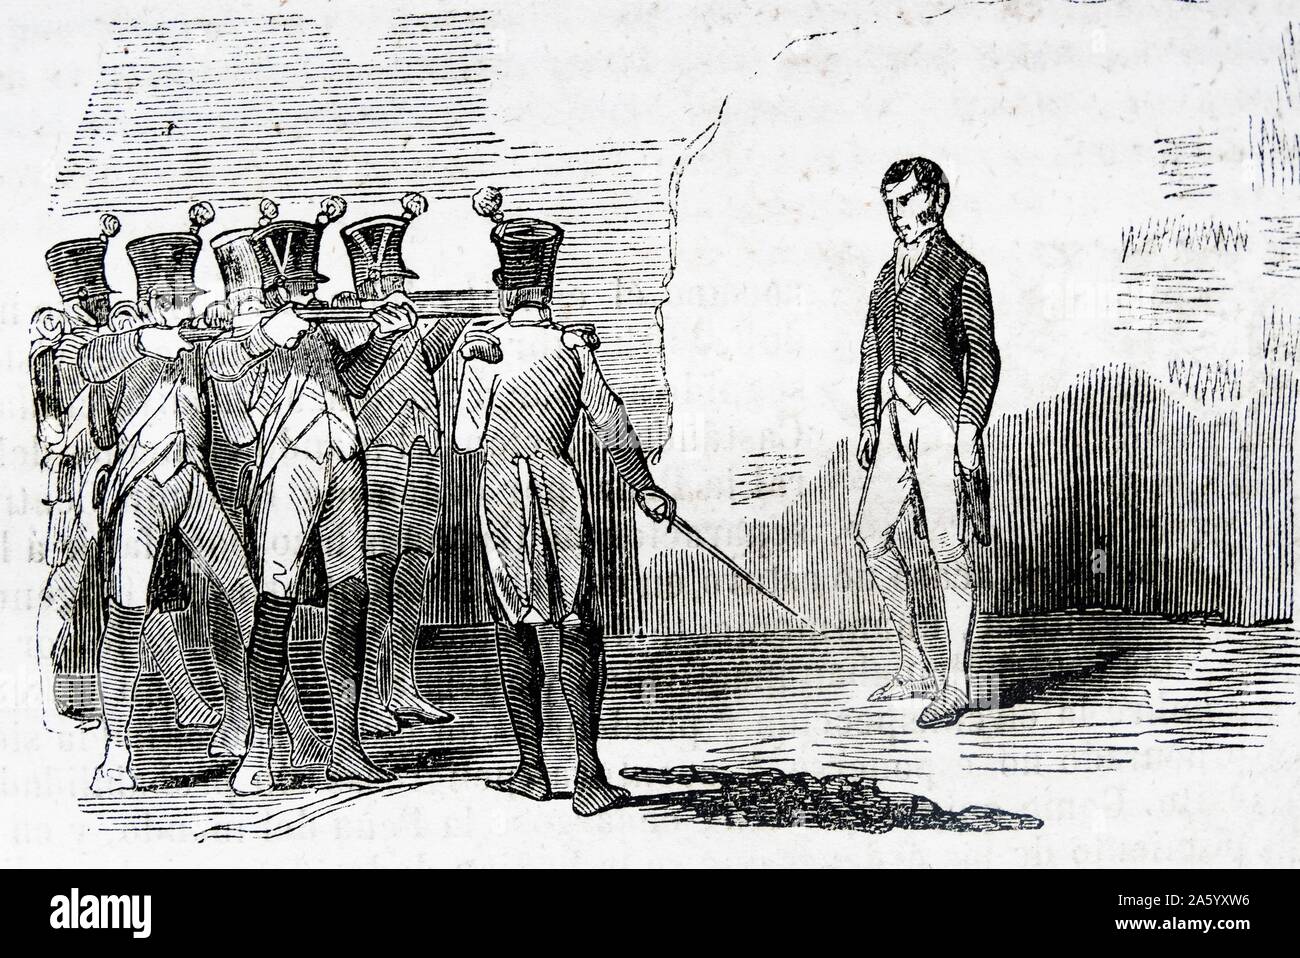 Gravure illustrant l'exécution du Lieutenant-colonel Santiago, au cours de la guerre d'Espagne. Datée 1809 Banque D'Images